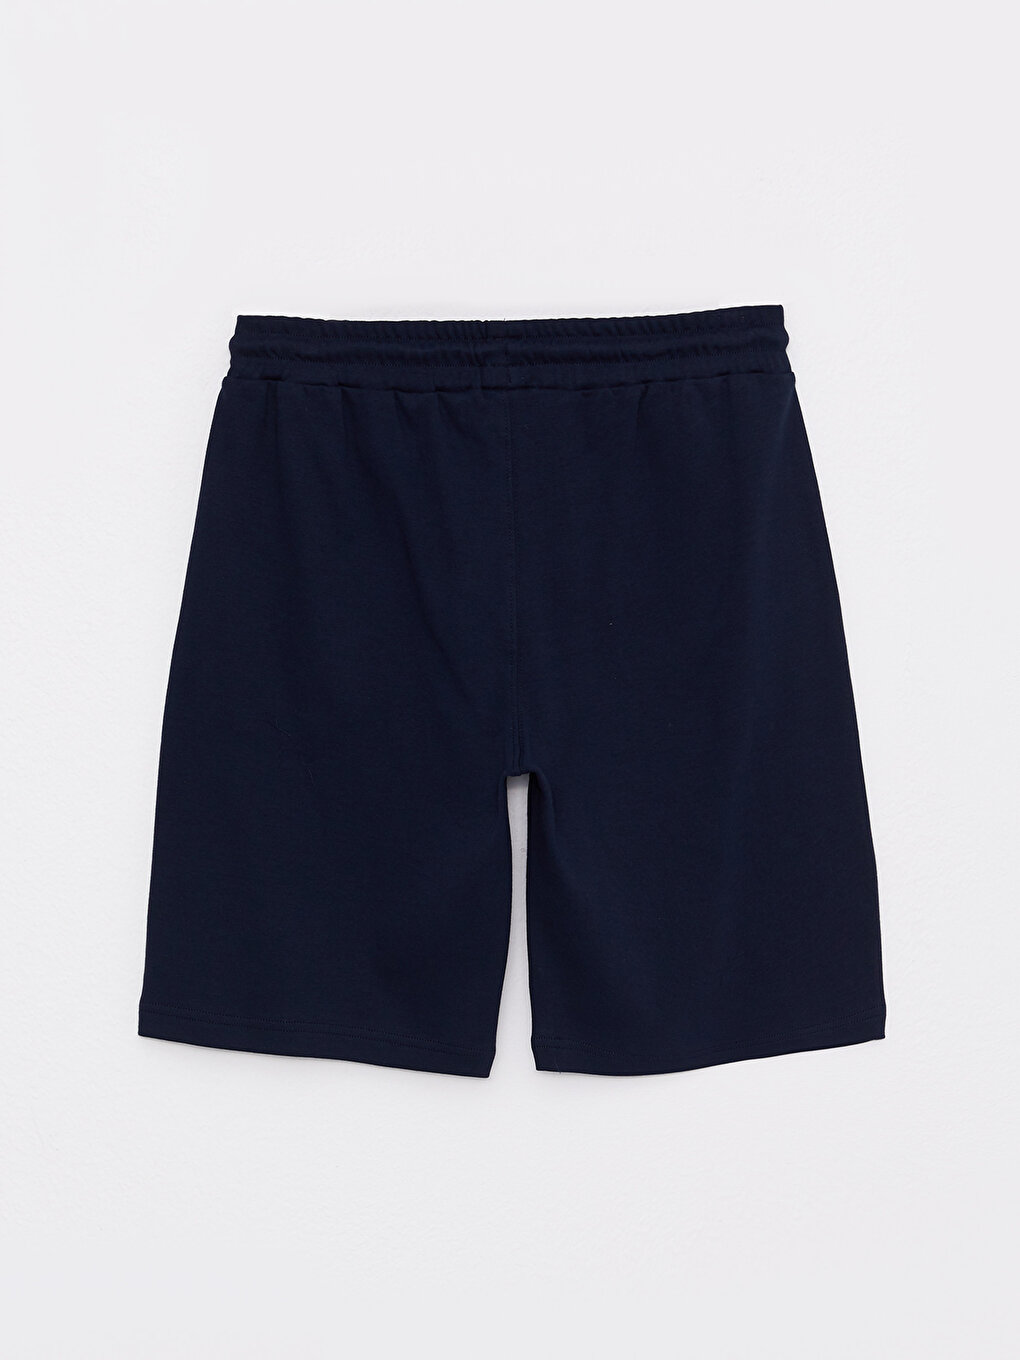 Standard Pattern Knitted Men's Shorts -S27857Z8-HRZ - S27857Z8-HRZ - LC ...